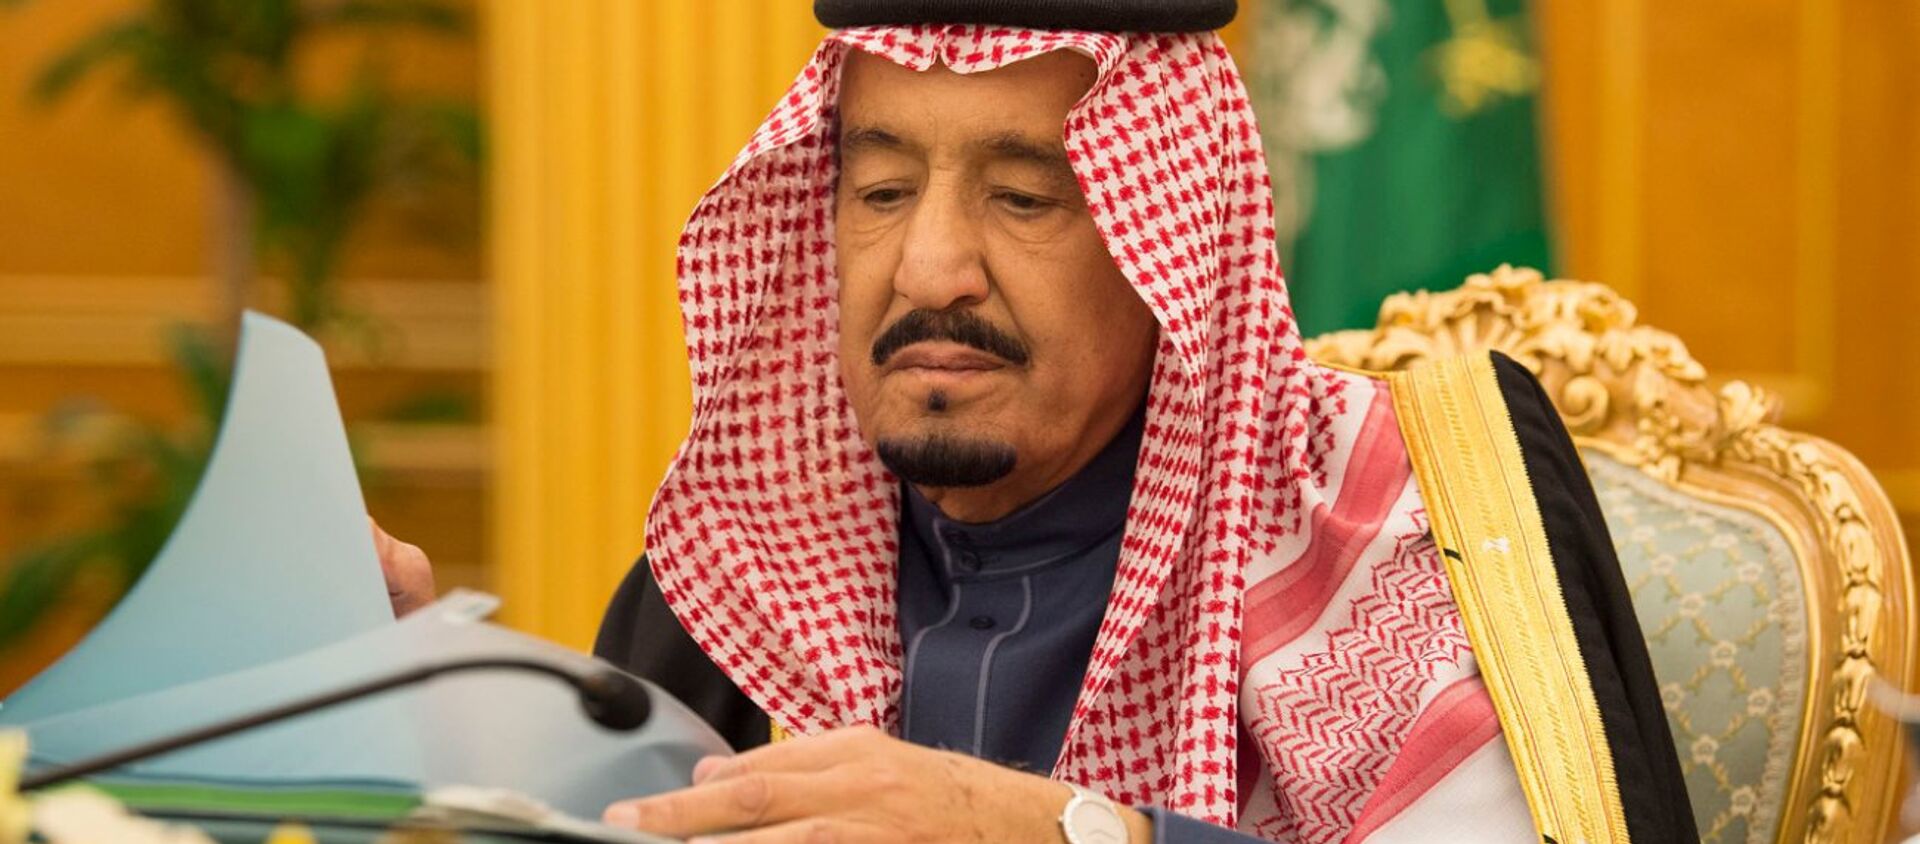  العاهل السعودي الملك سلمان بن عبدالعزيز خلال جسلة لمجلس الوزراء السعودي وأول تعليق بعد مقتل علي عبد الله صالح في الرياض، السعودية 5 ديسمبر/ كانون الأول 2017 - سبوتنيك عربي, 1920, 09.12.2020